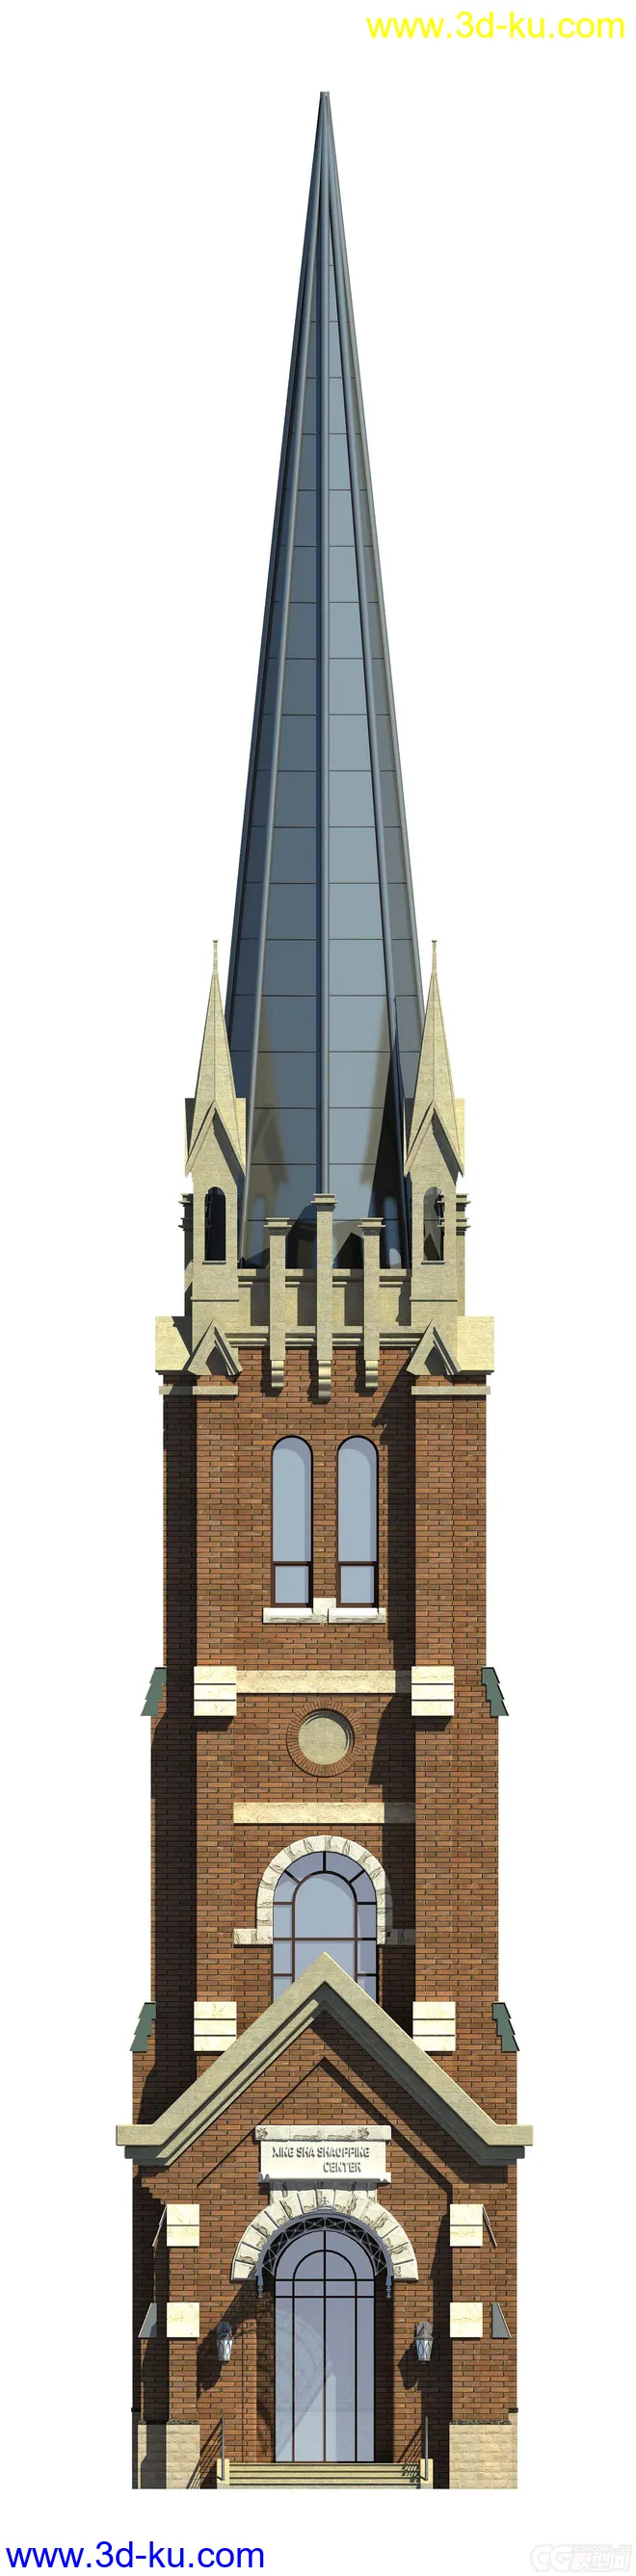 塔楼模型的图片1